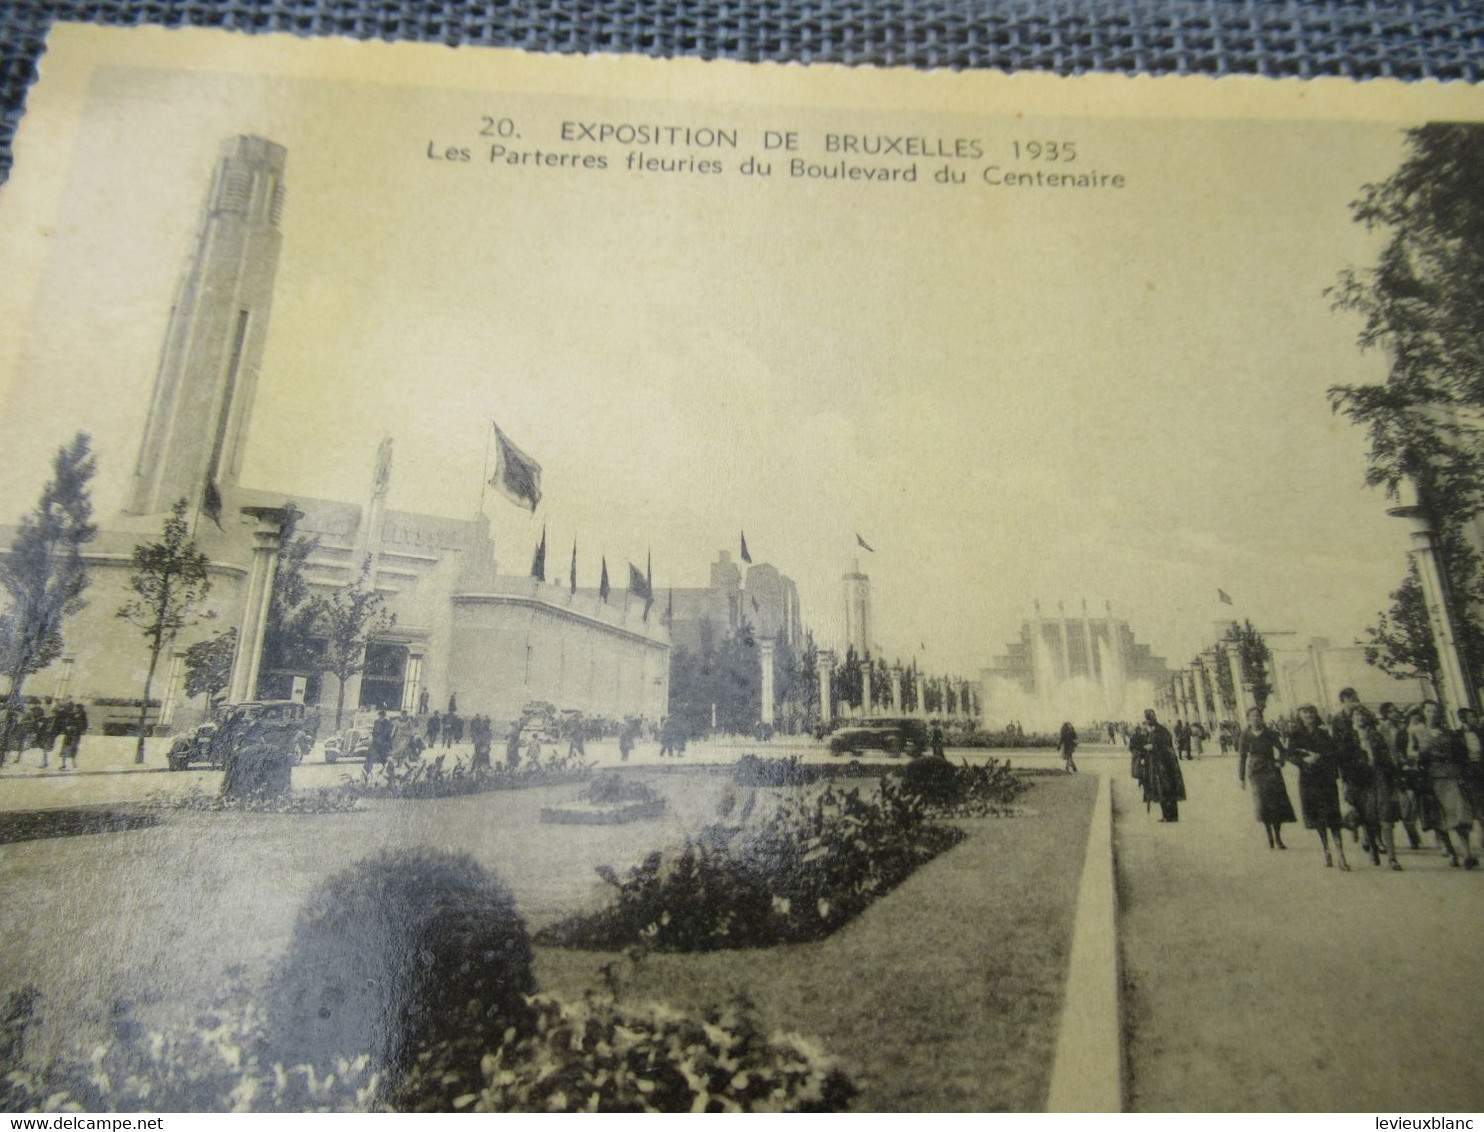 L'Exposition de BRUXELLES 1935/Avec ses 10 plus jolies vues/ Photographies réelles/ Dherv/ 1935         CPDIV371